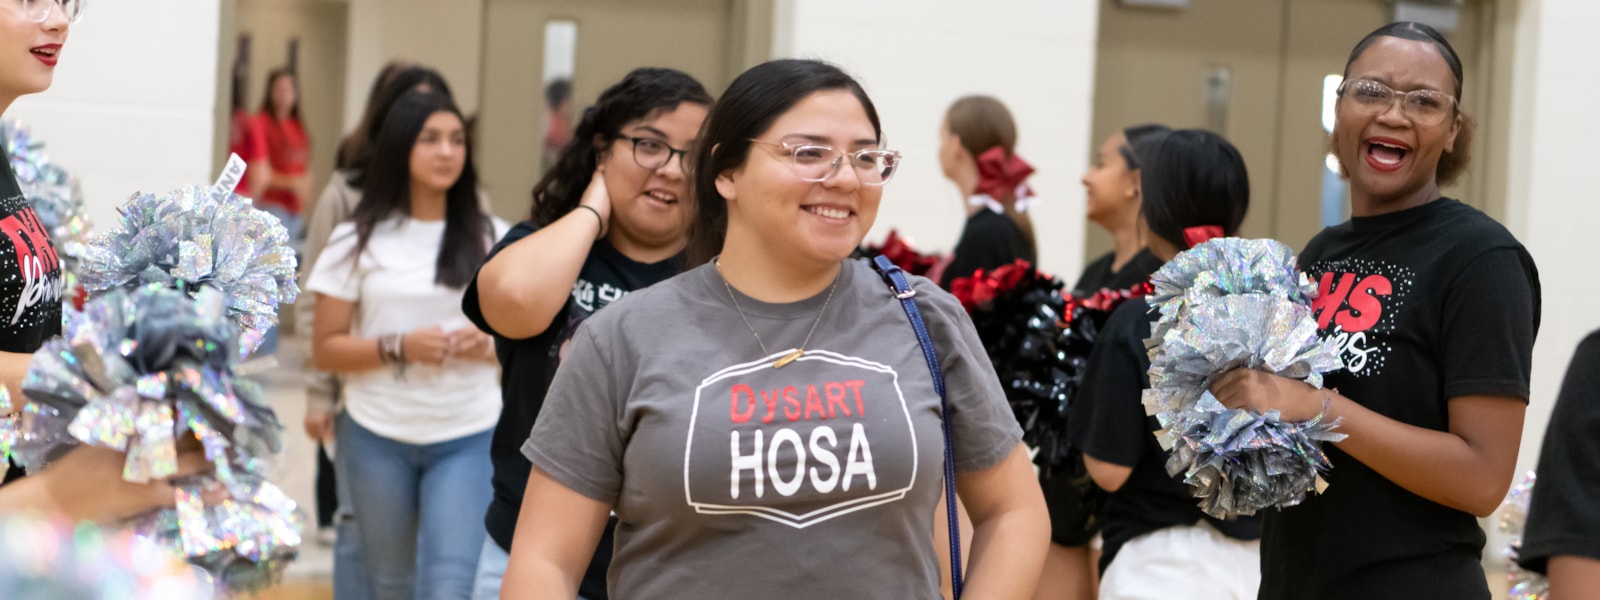 HOSA member walking past cheerleaders